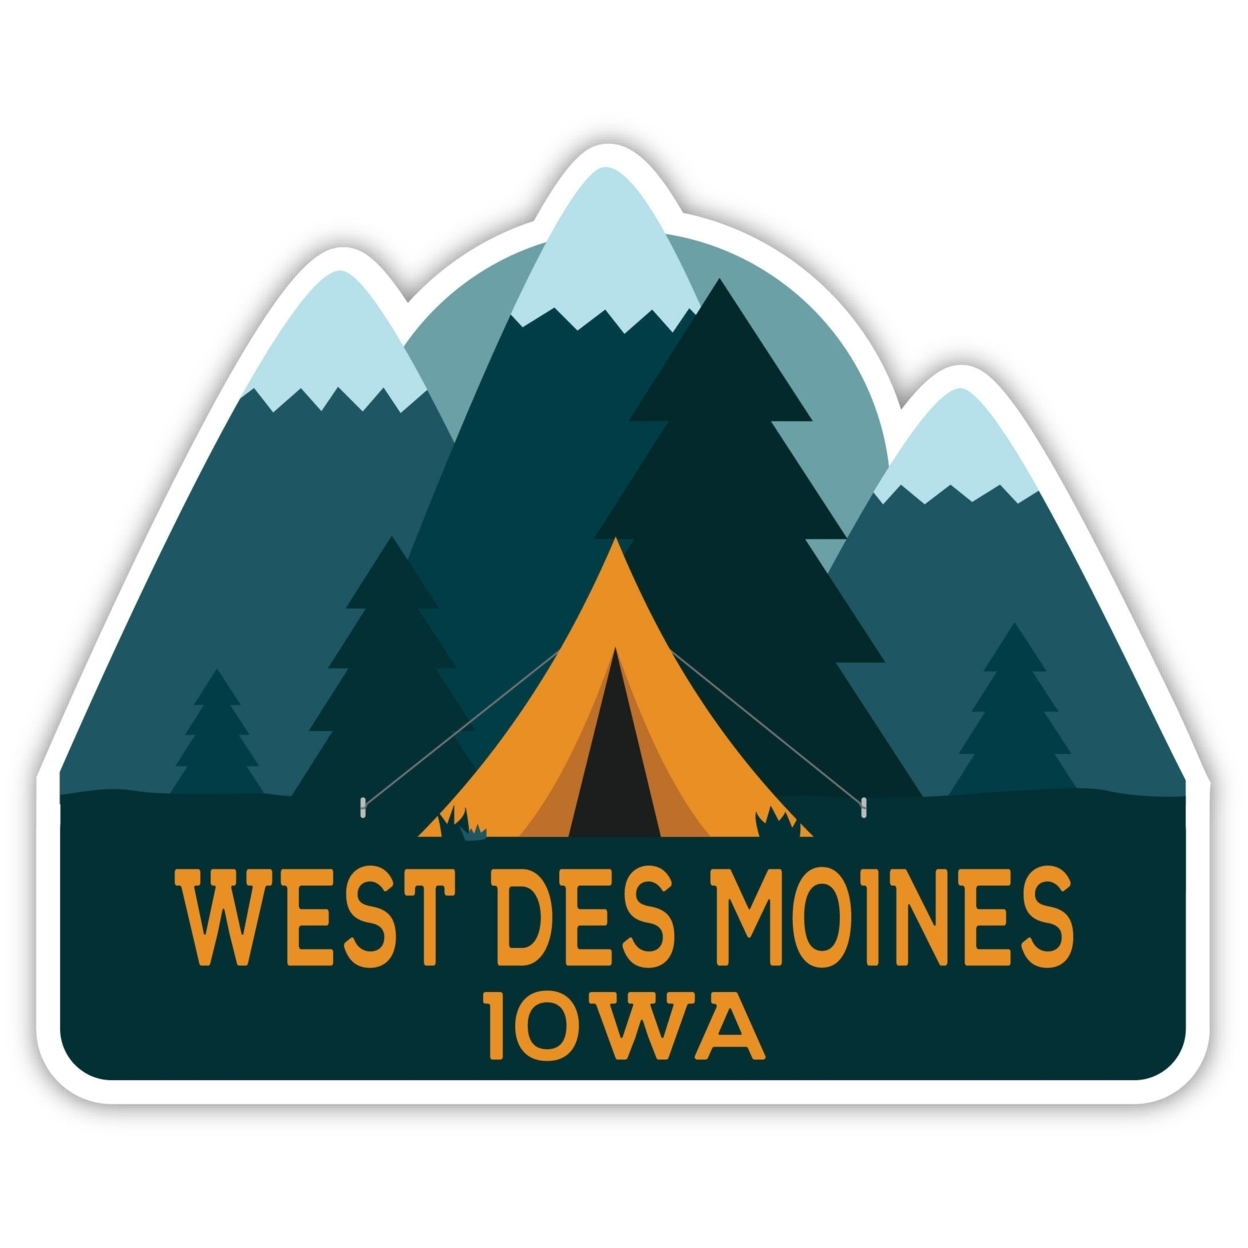 West Des Moines Iowa Souvenir Decorative Stickers (Choose Theme And Size) - Single Unit, 2-Inch, Tent